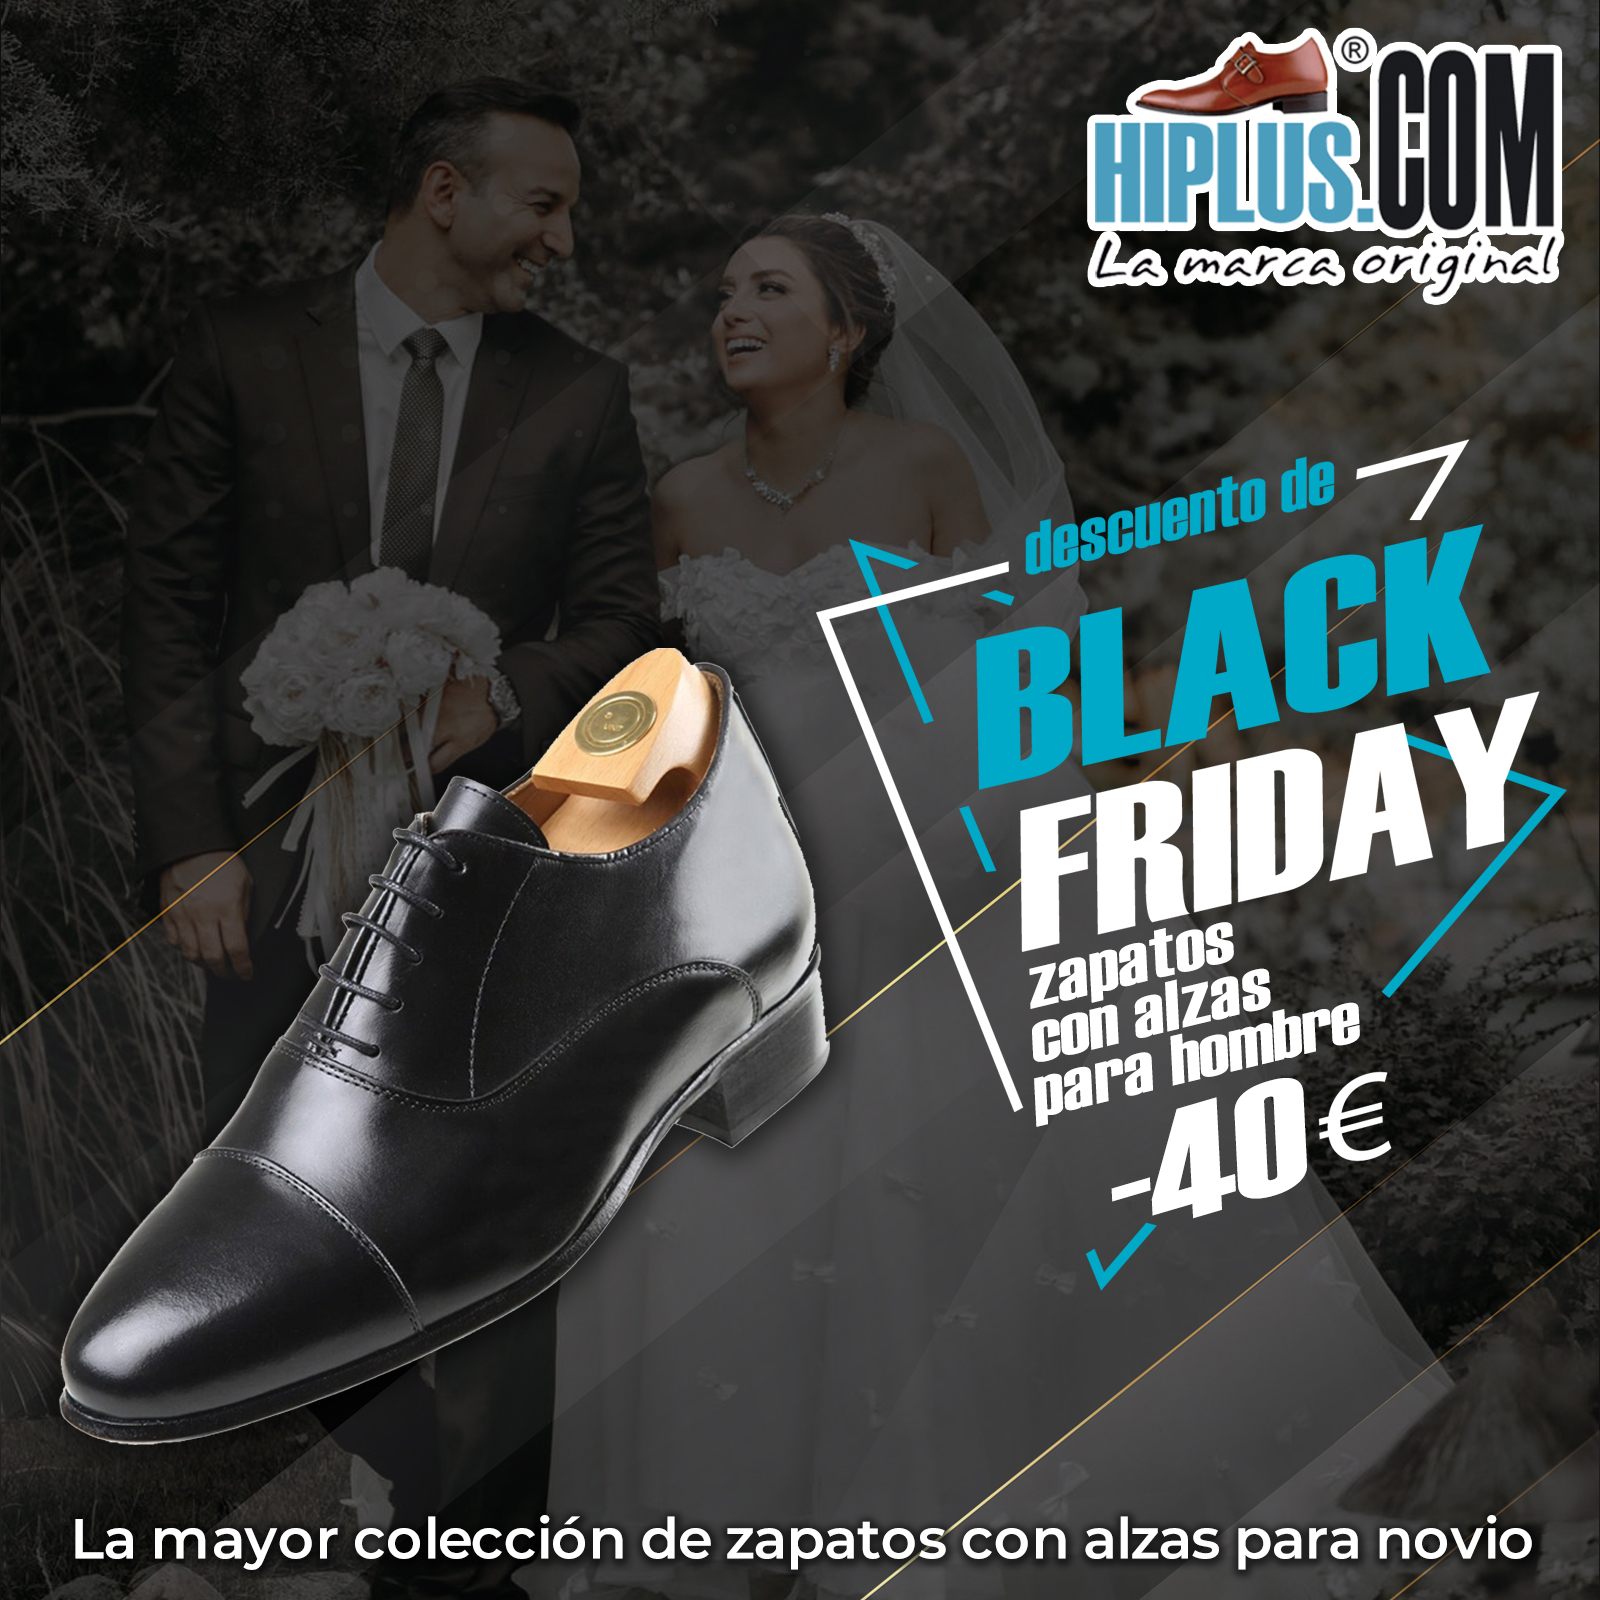 Calzados Hiplus on Twitter: "⚡Bienvenid@ al Black Friday de 40 Euros de descuento, del 18 al 30 de Noviembre. Zapatos de Ceremonia👞 Aumenta de estatura sin que nadie lo note. La